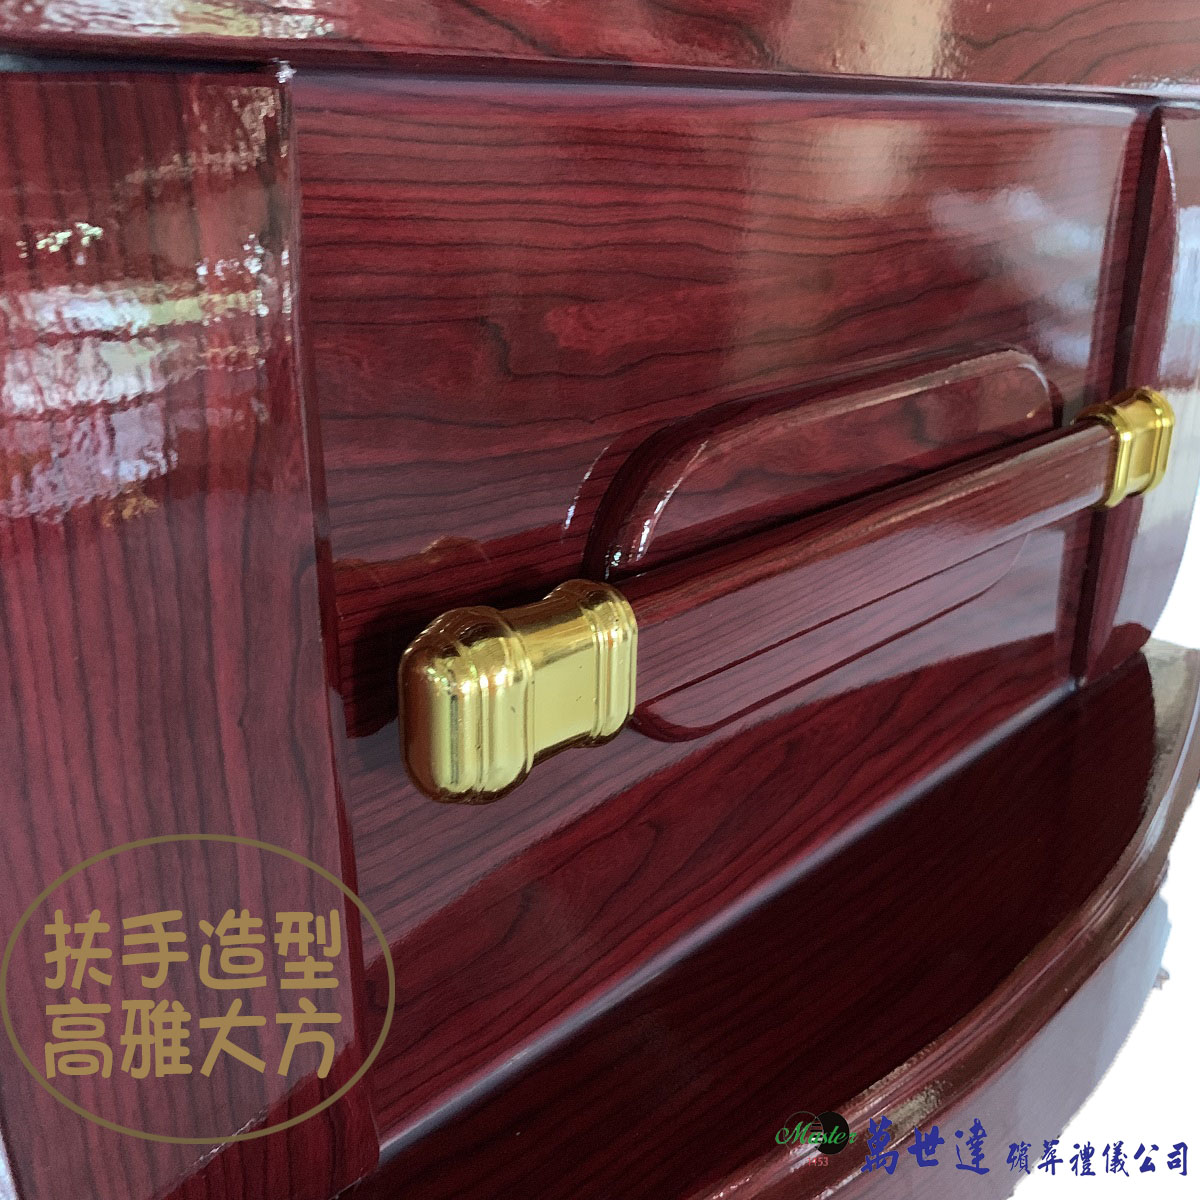 【入殮出】火化平蓋紅木扶手棺2.1尺